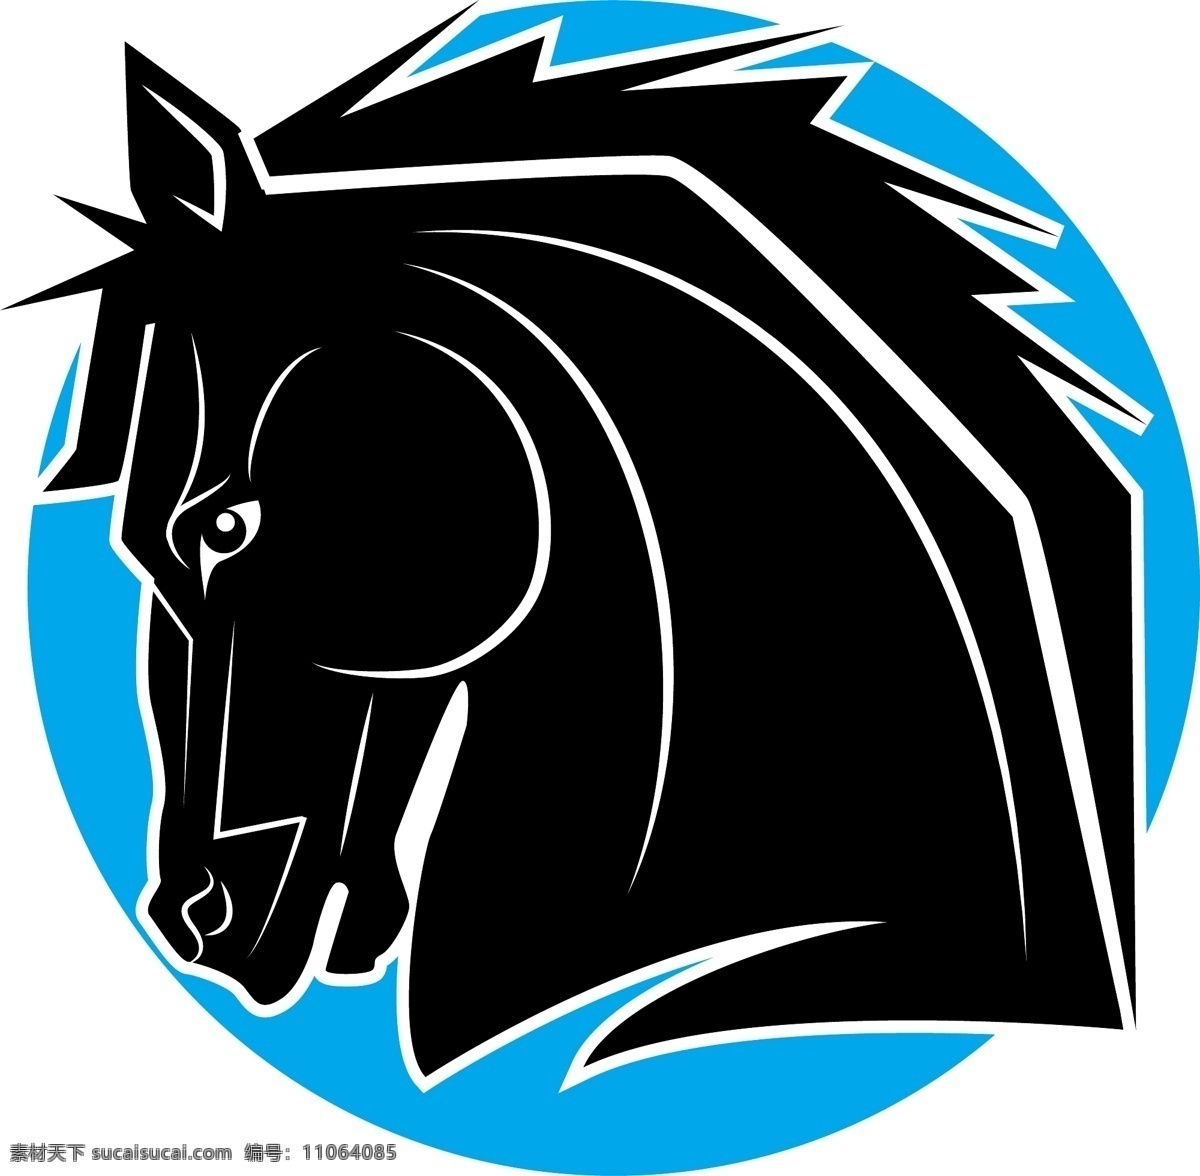 马头徽标设计 马头 徽标设计 马头设计 创意马头徽标 创意徽标设计 创意马头 创意徽标 共享设计矢量 标志图标 其他图标